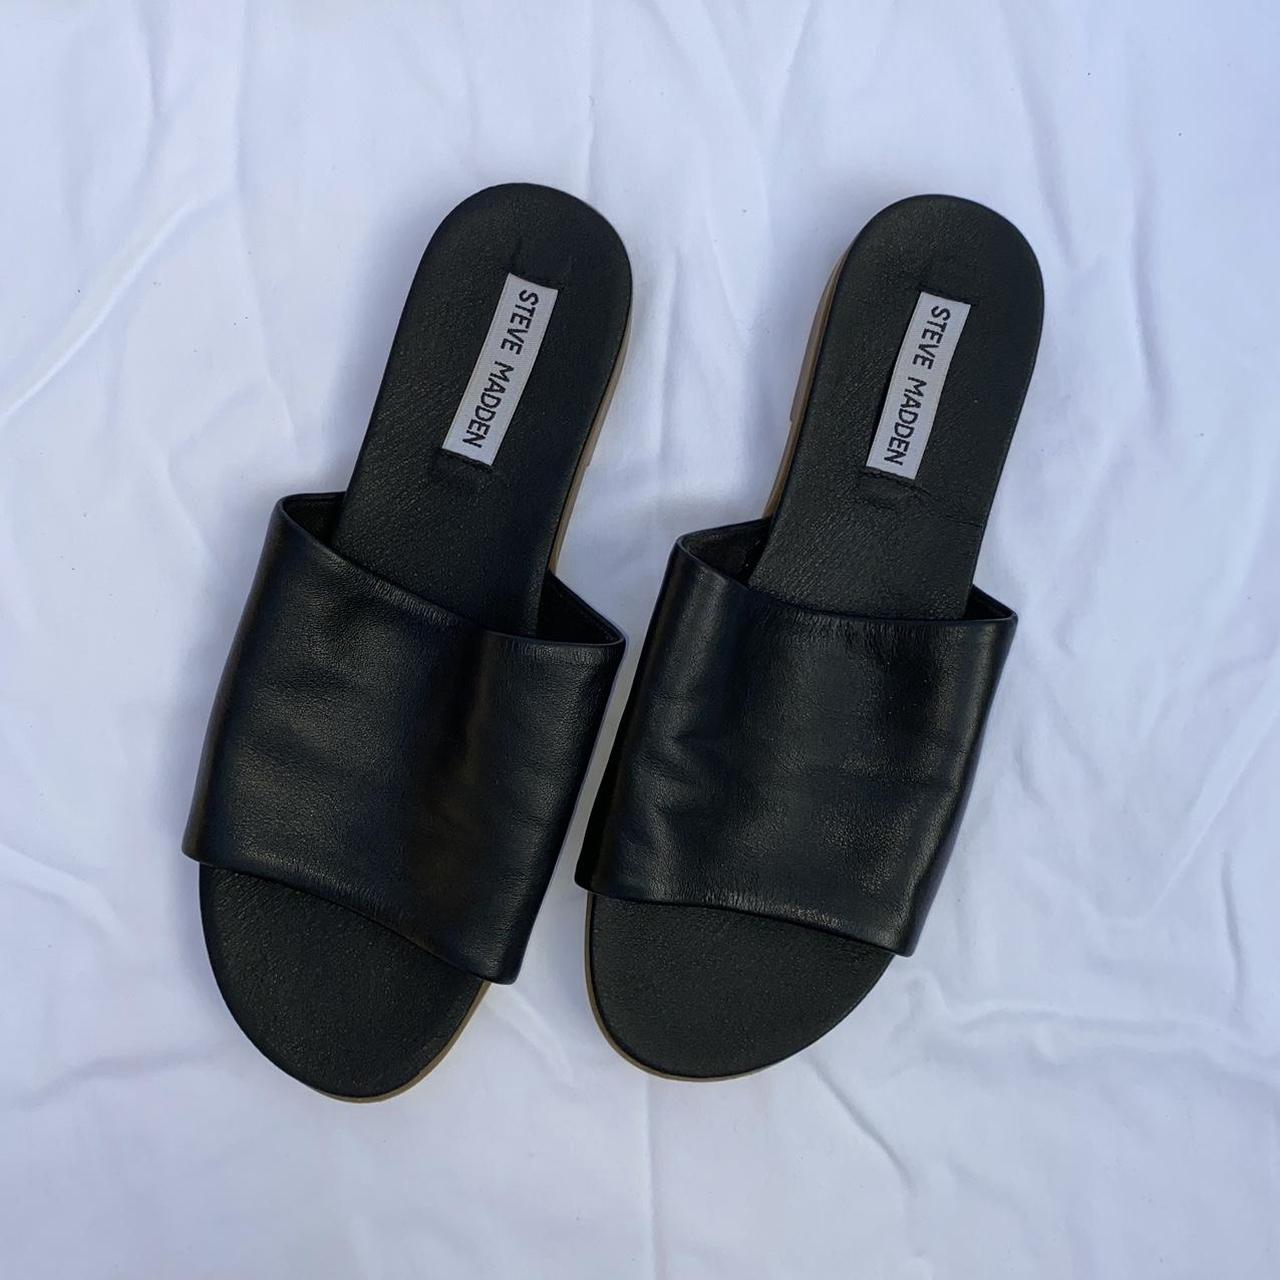 Steve Madden Kaya Black Leather Slides black slide... - Depop